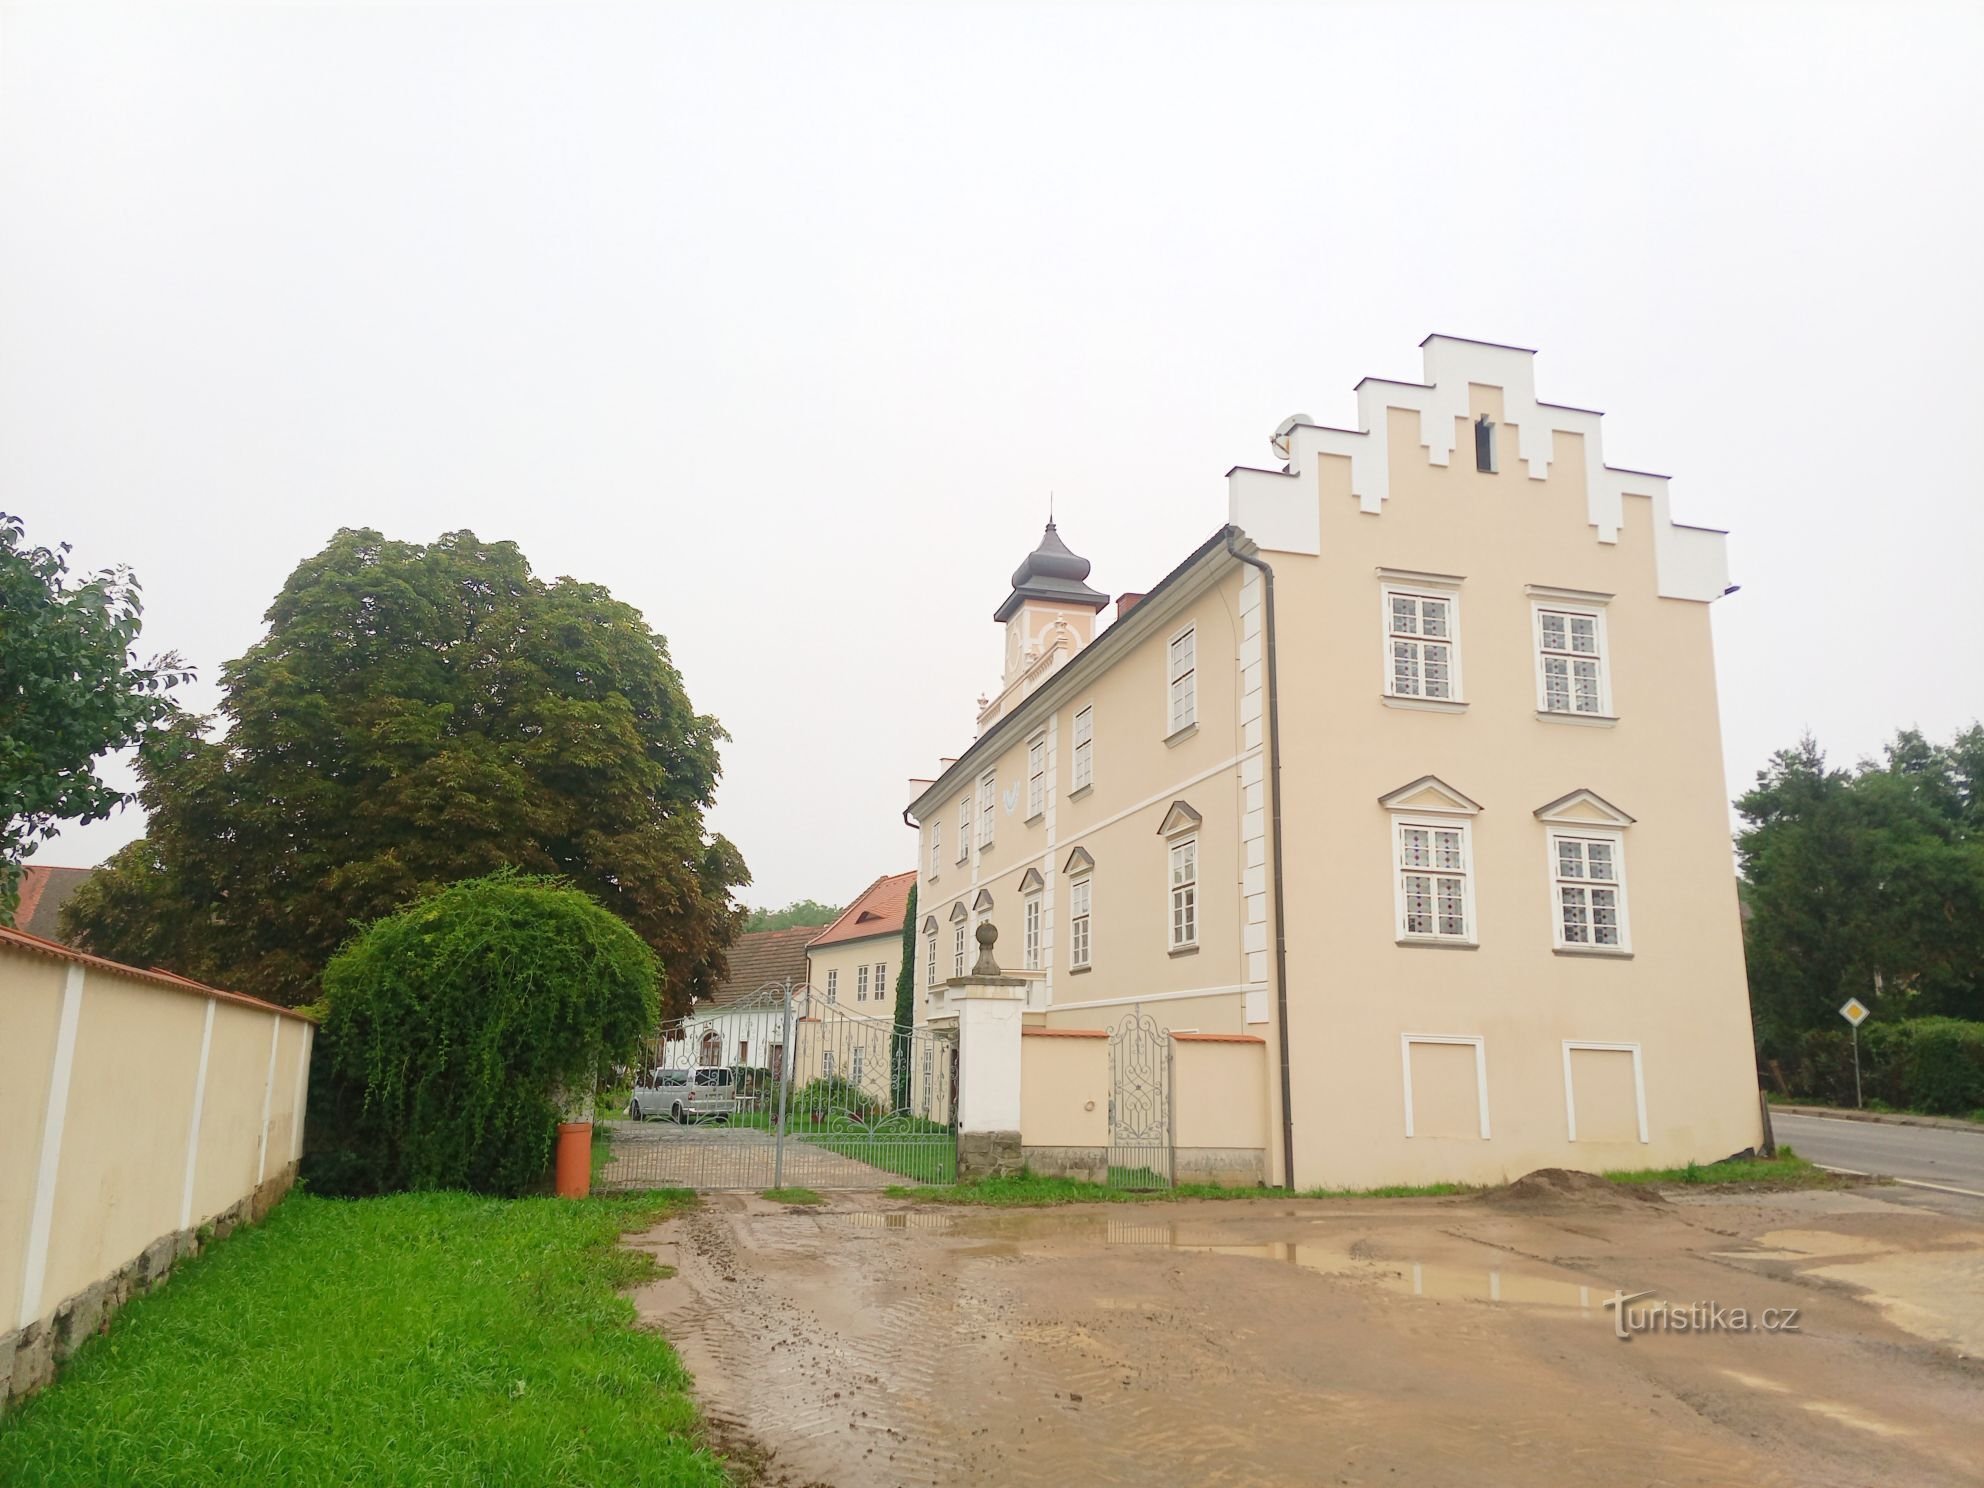 1. Castelul renascentist din Kňovice de la începutul secolului al XVII-lea. O clădire dreptunghiulară cu două etaje cu tr